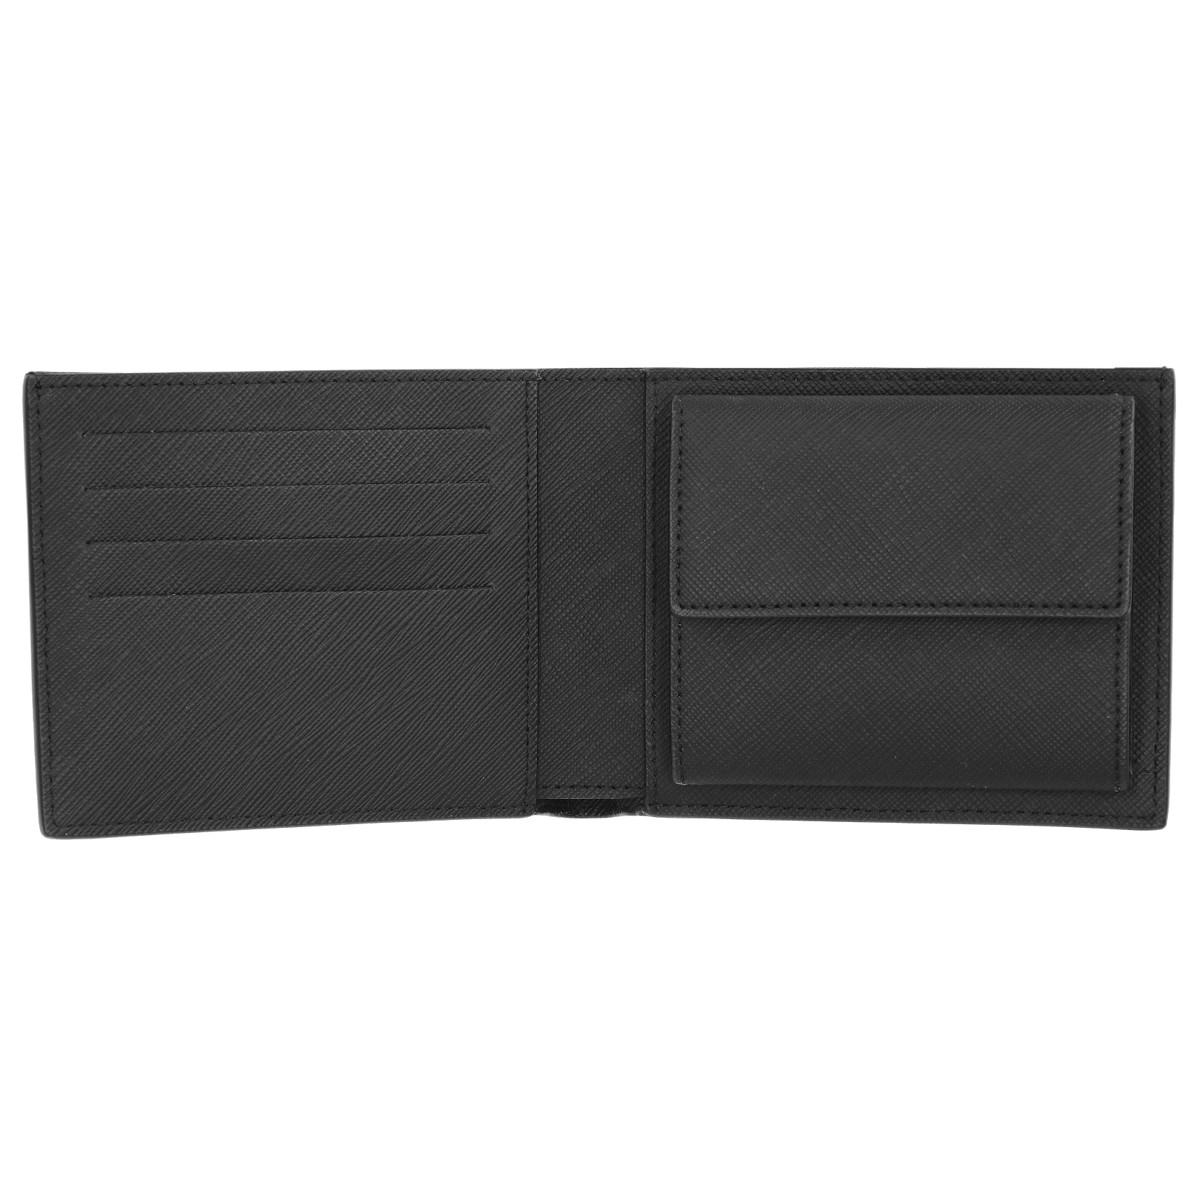 ■メンズ 二つ折り財布 カーフレザー BLACK